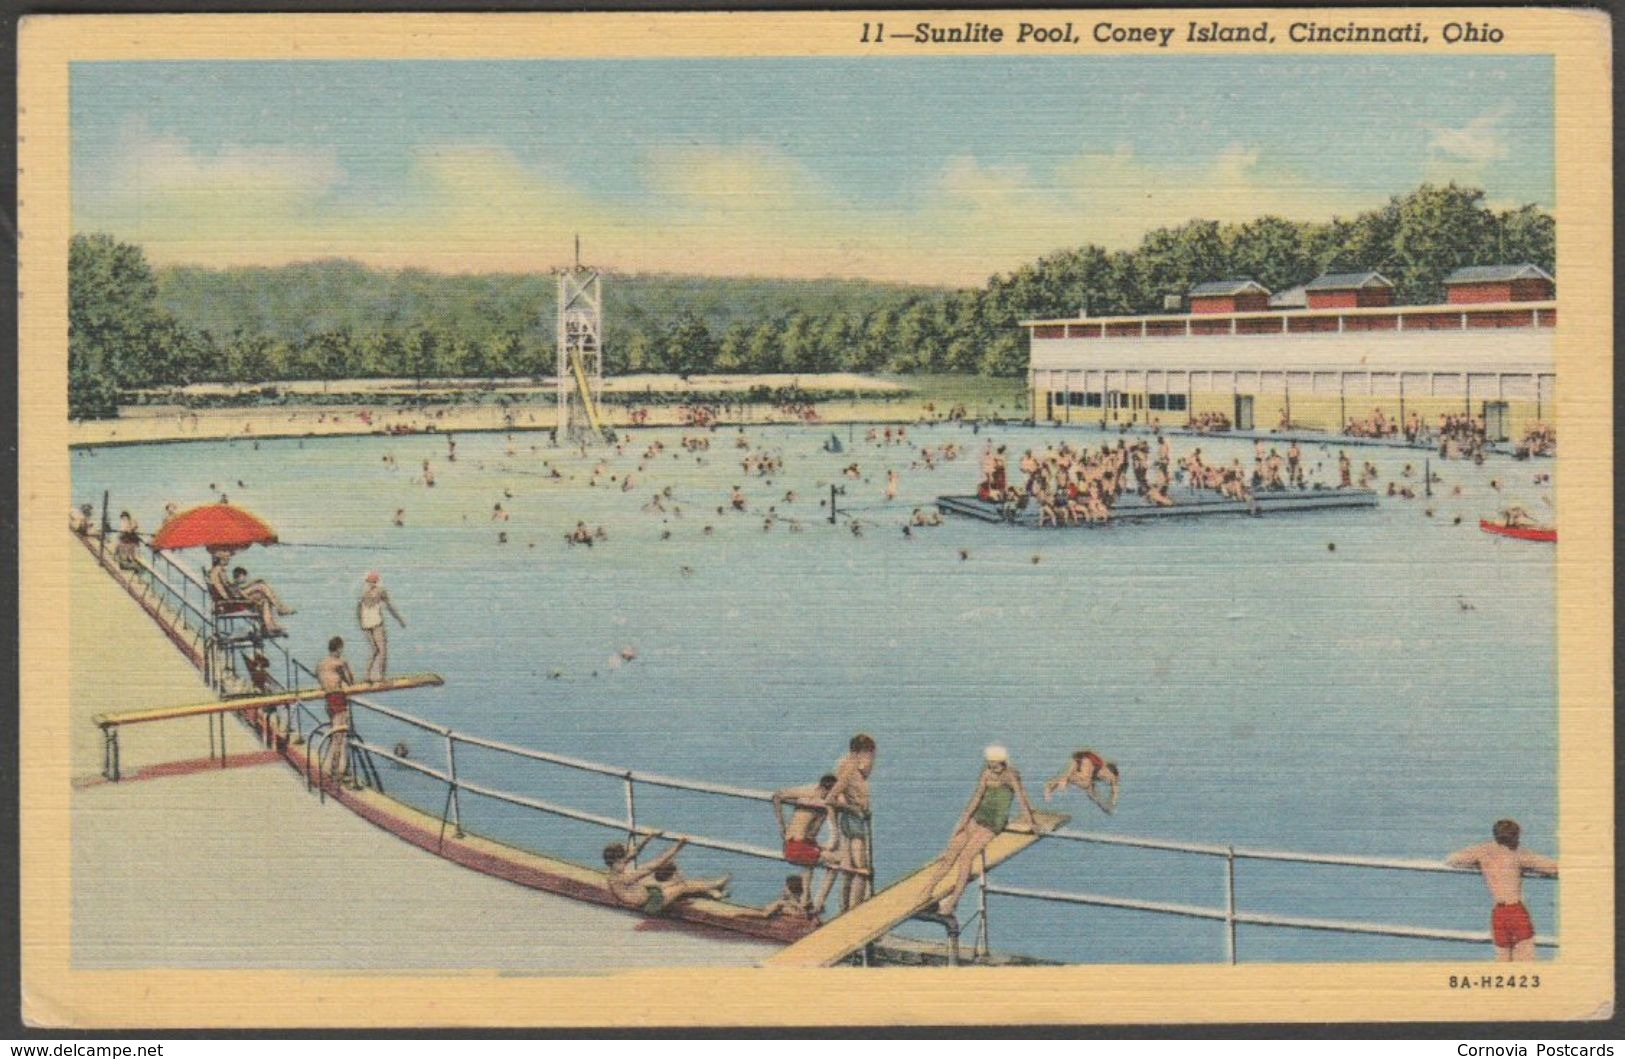 Sunlite Pool, Coney Island, Cincinnati, Ohio, 1947 - J Louis Motz Postcard - Cincinnati